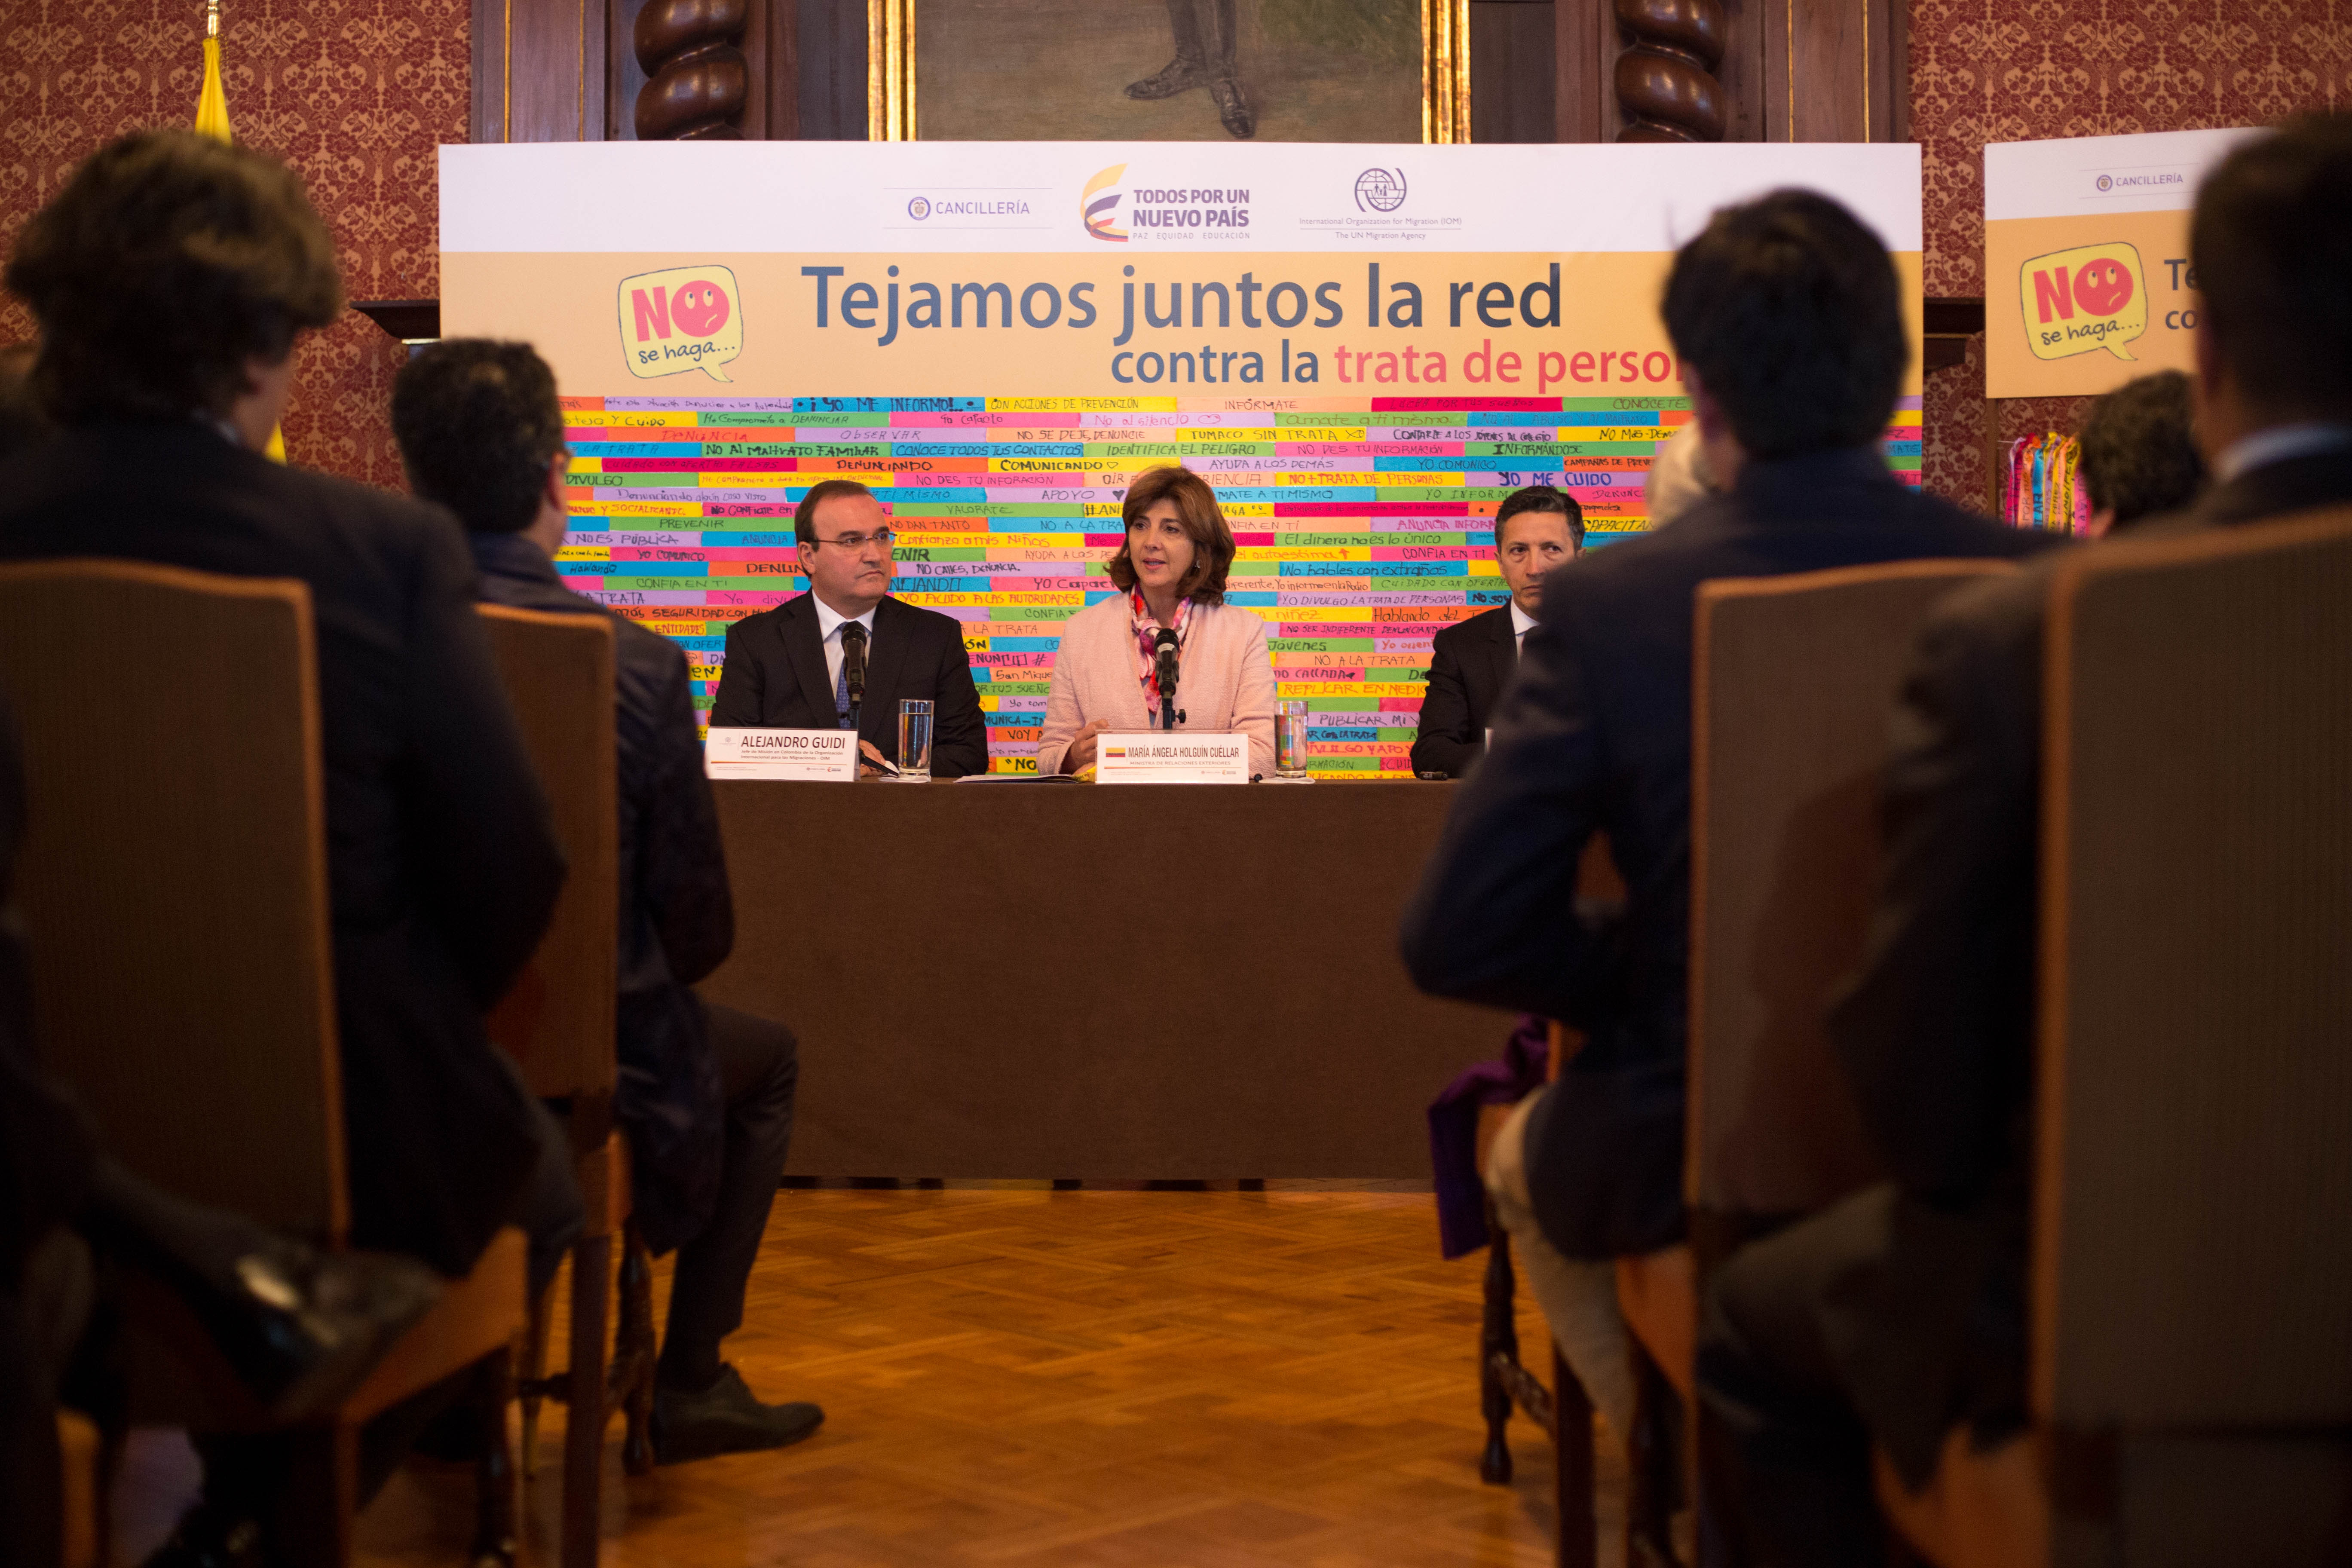 Cancillería tiene el compromiso de prevenir y rescatar a víctimas de trata de personas: Ministra Holguín